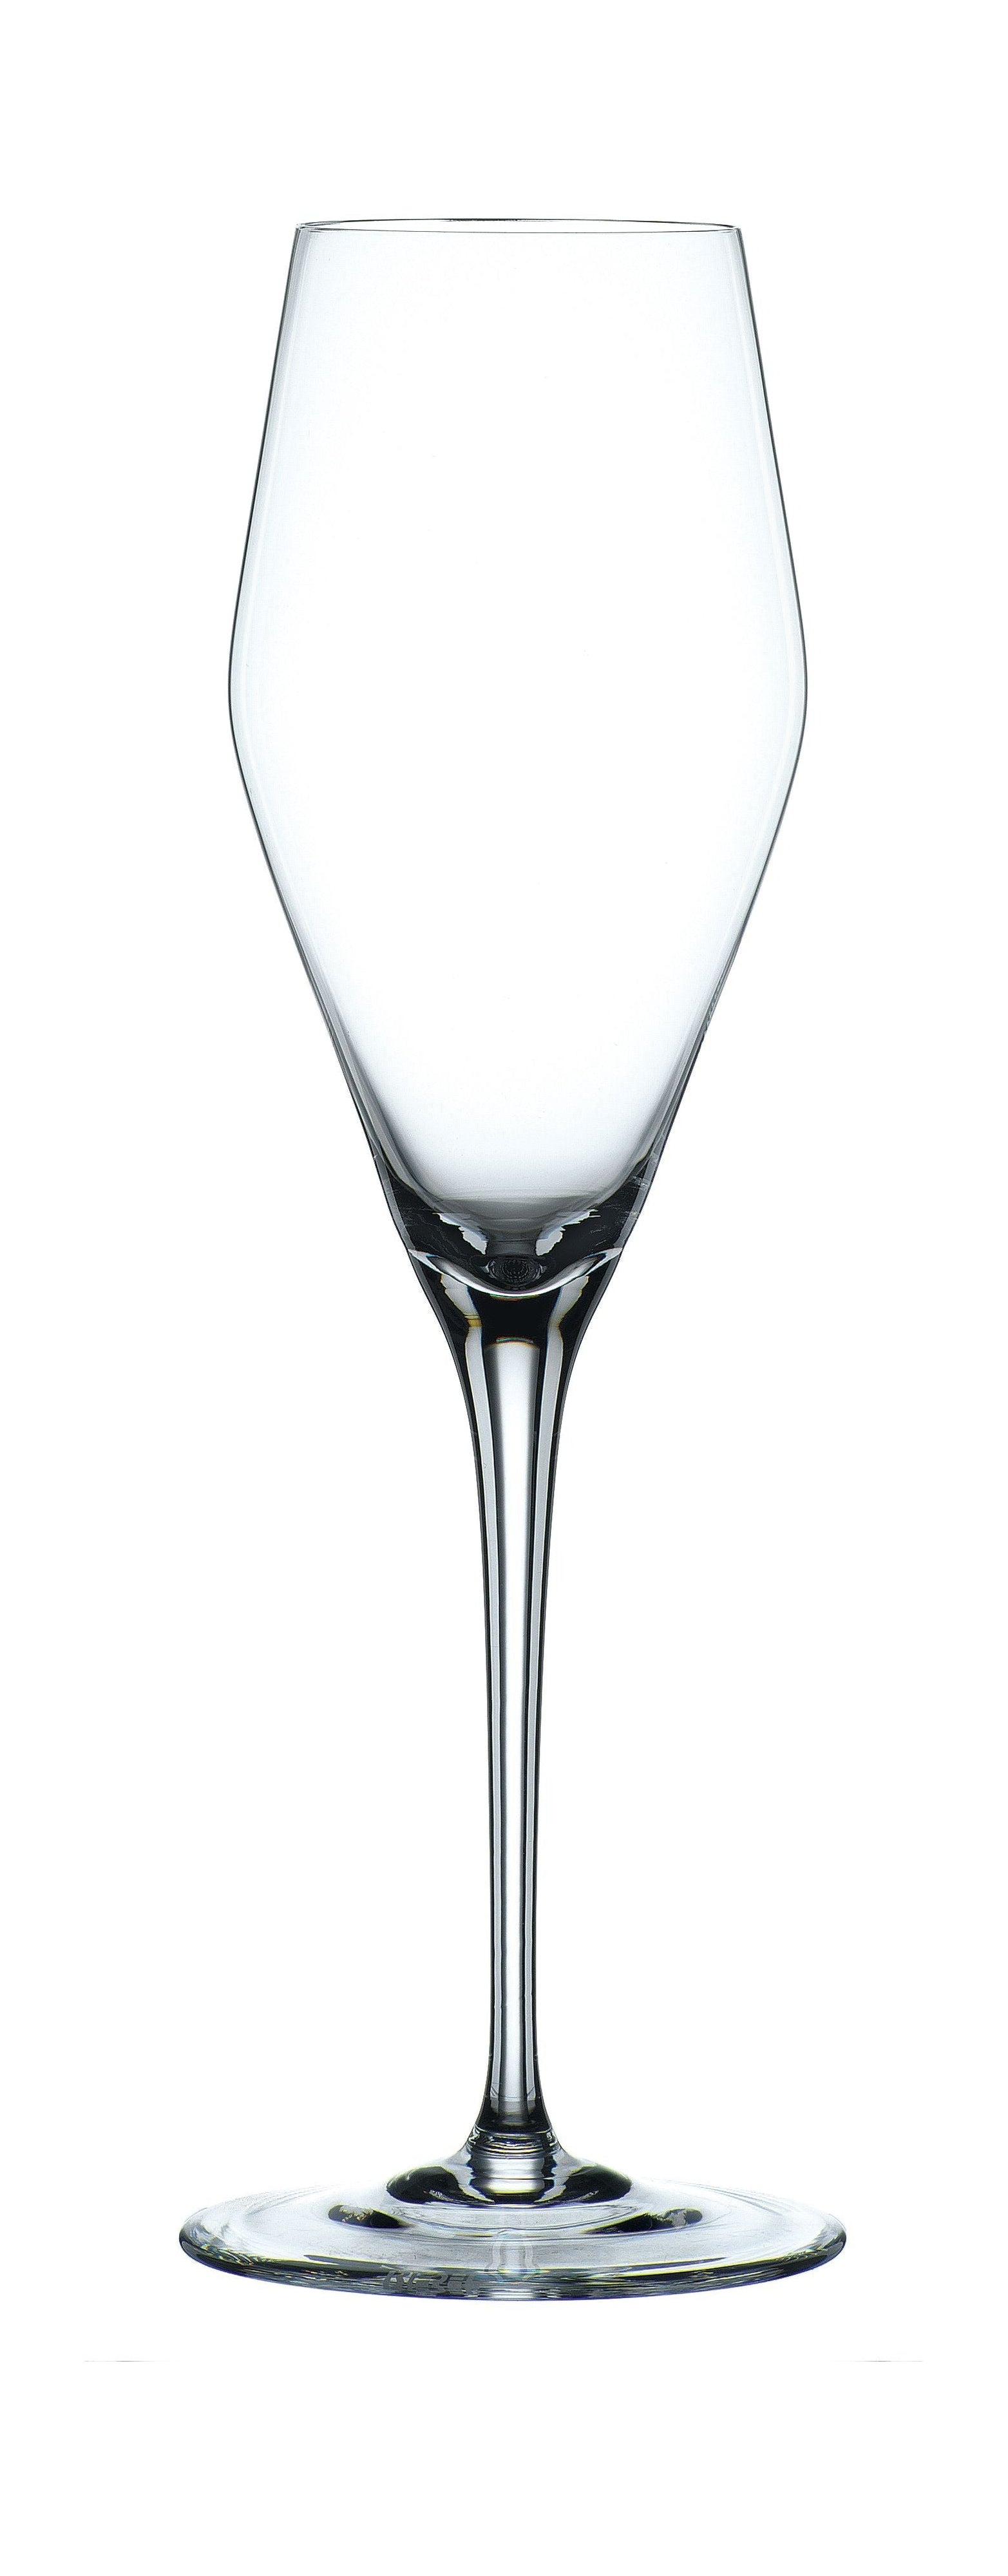 Nachtmann Vi Nova Champagne Glass 280 Ml, Set Of 4